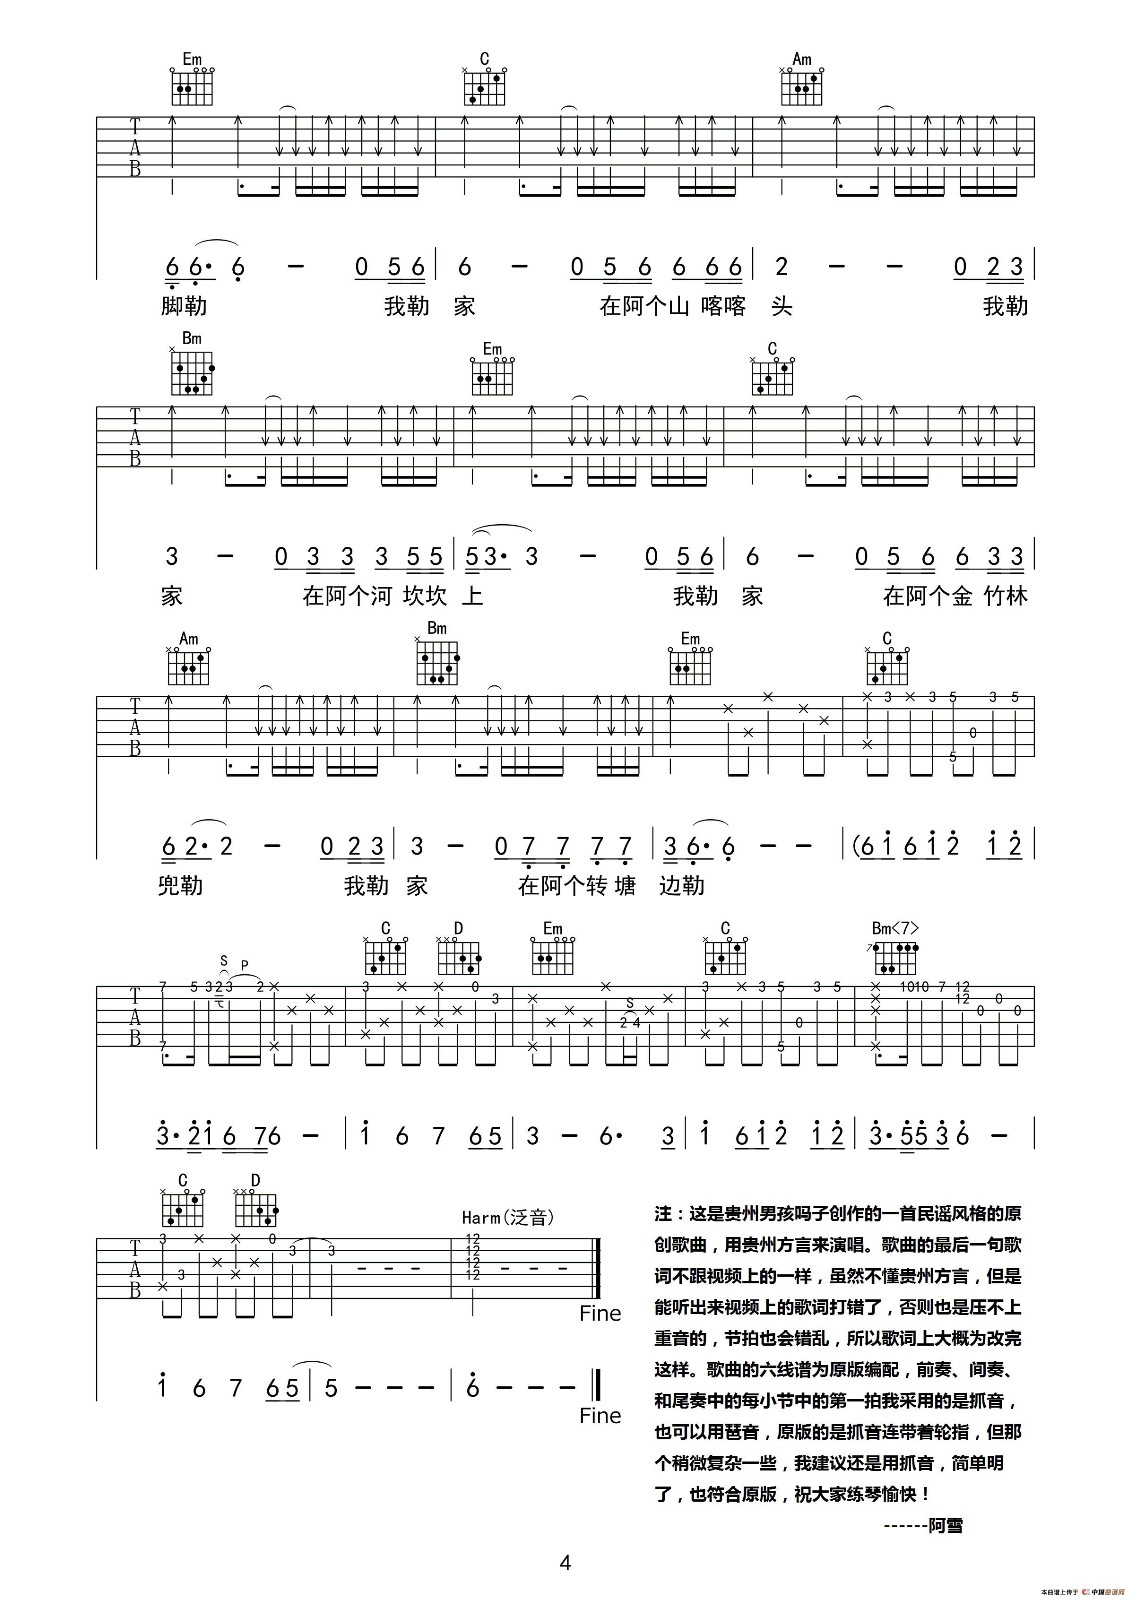 我嘞家吉他谱第(4)页